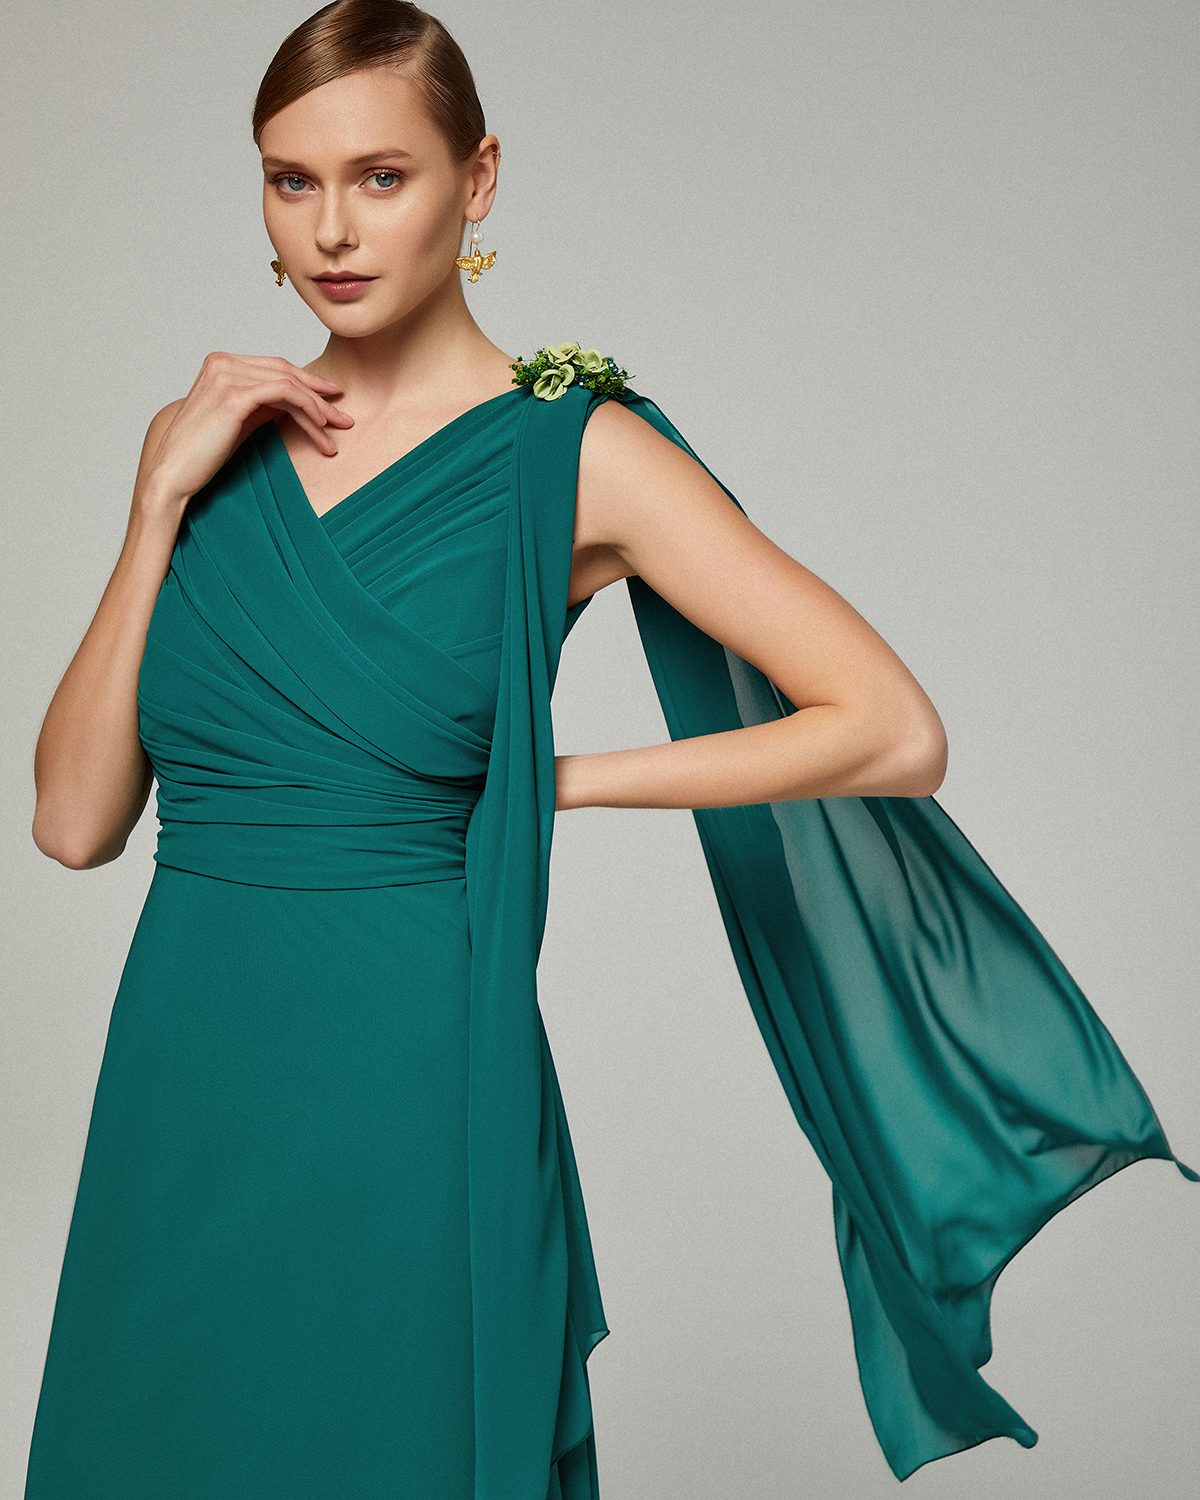 Κλασικό μακρύ φόρεμα με ντραπέ τοπ,  φουλάρι και καρφίτσα στον ένα ώμο